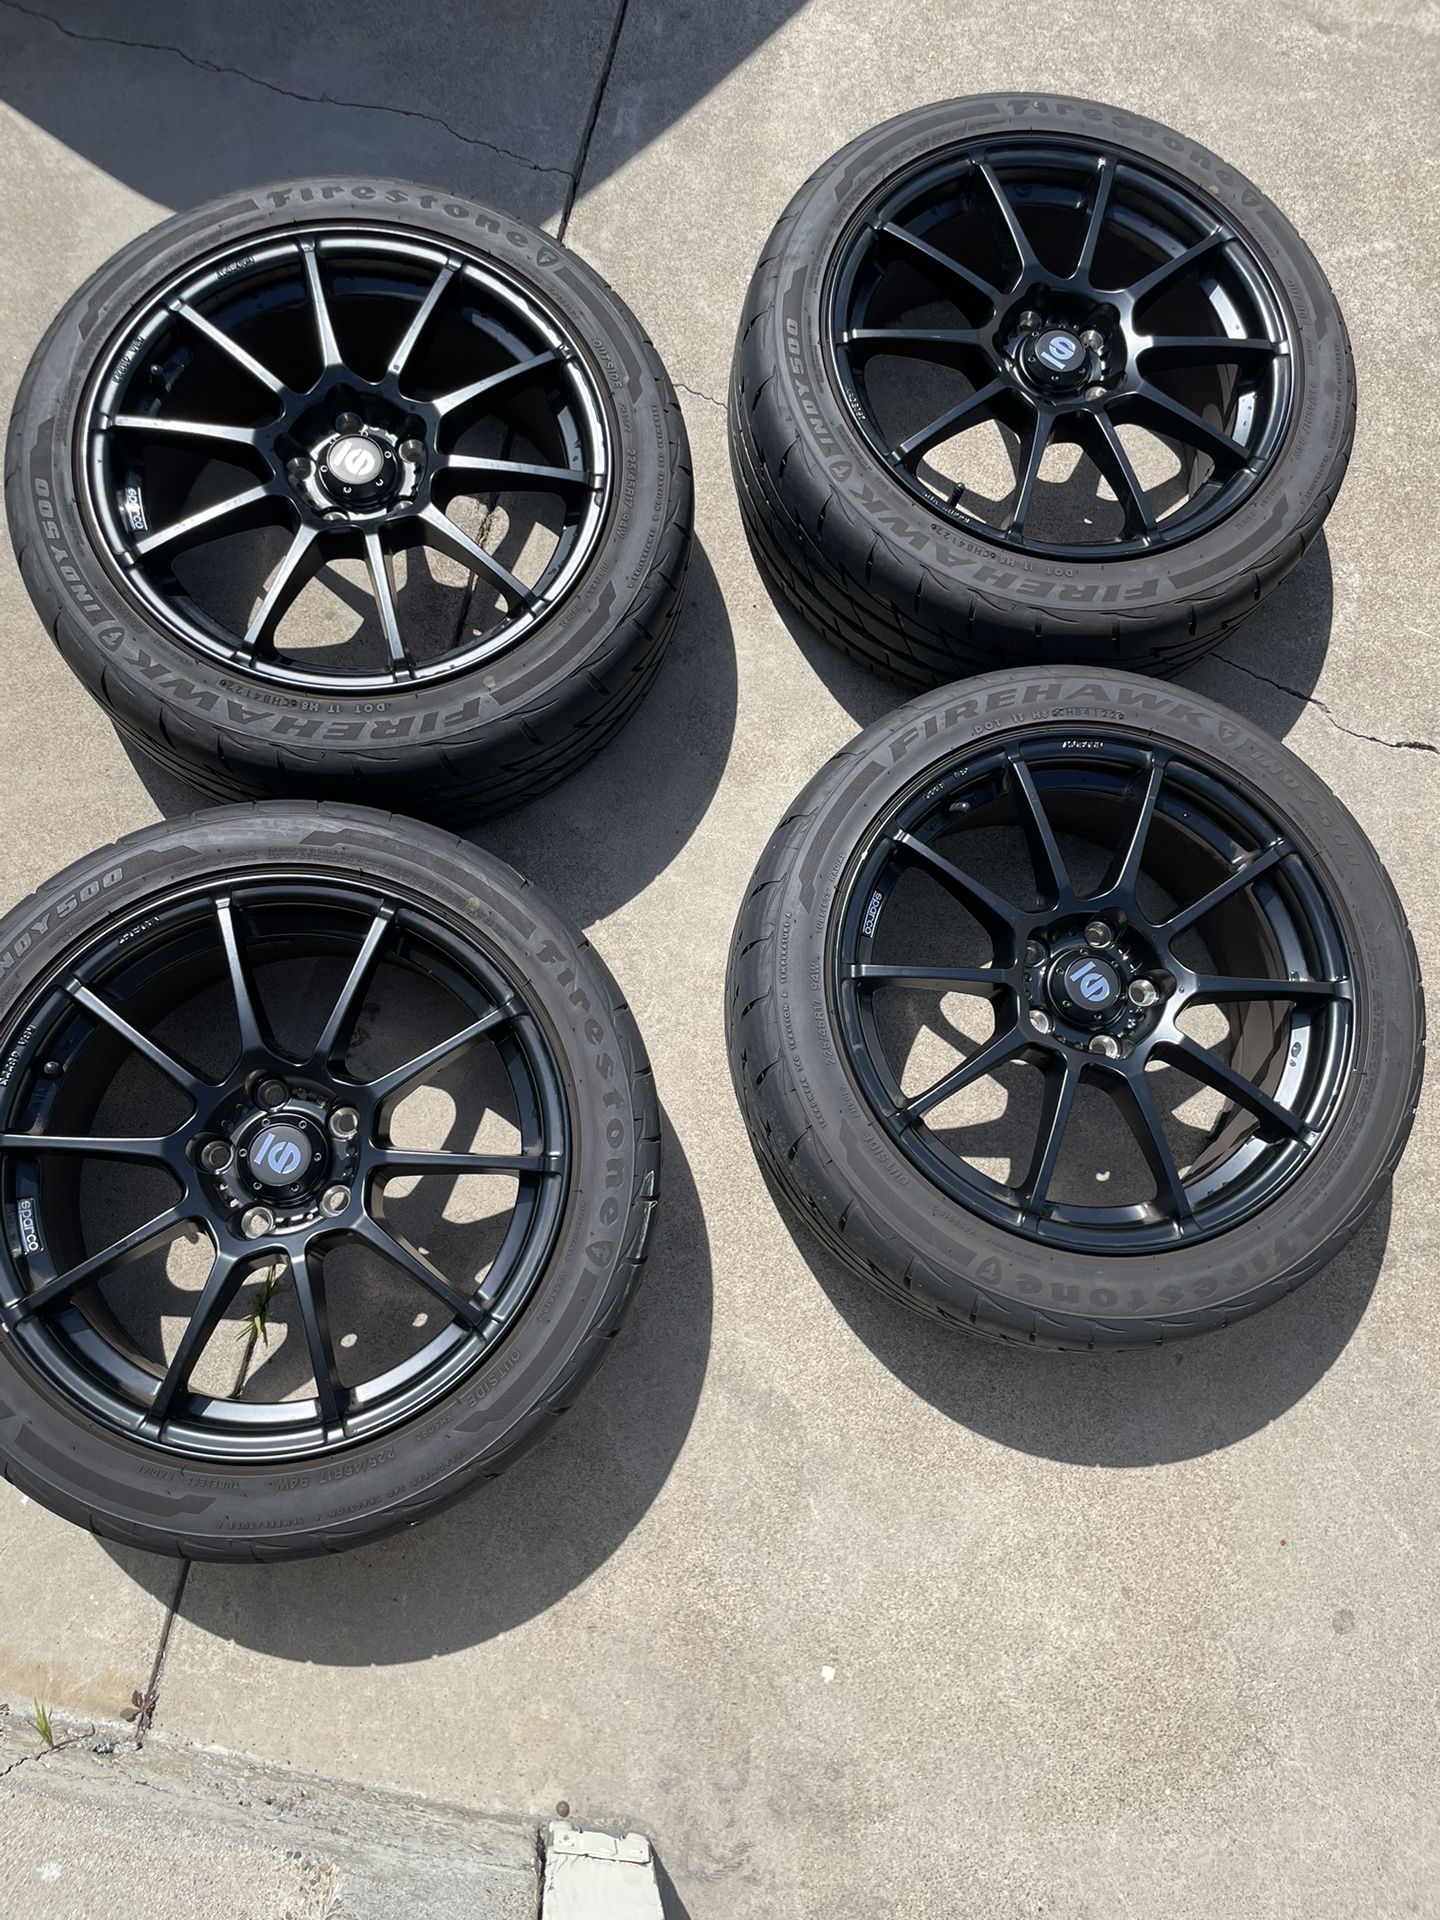 GTI Wheels Sparco Tires 